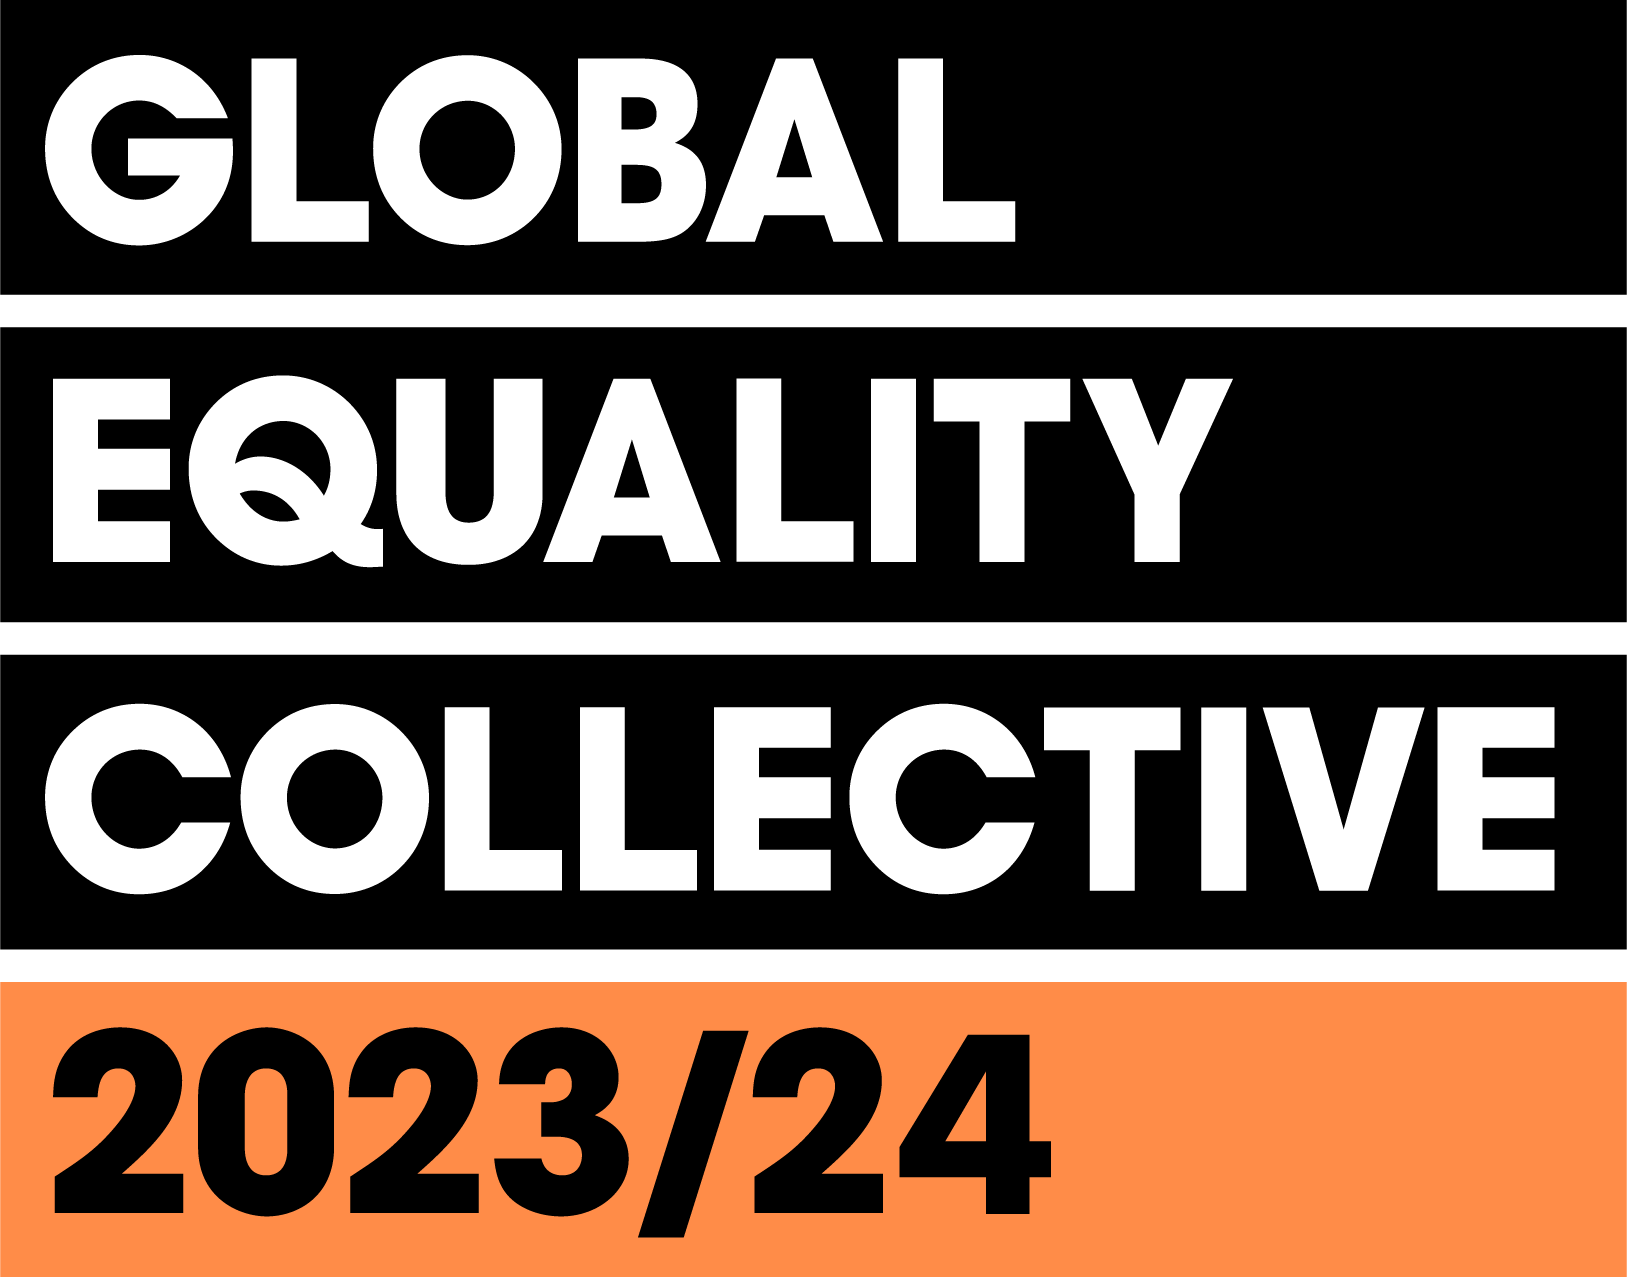 Global Equality Collective 2023/24